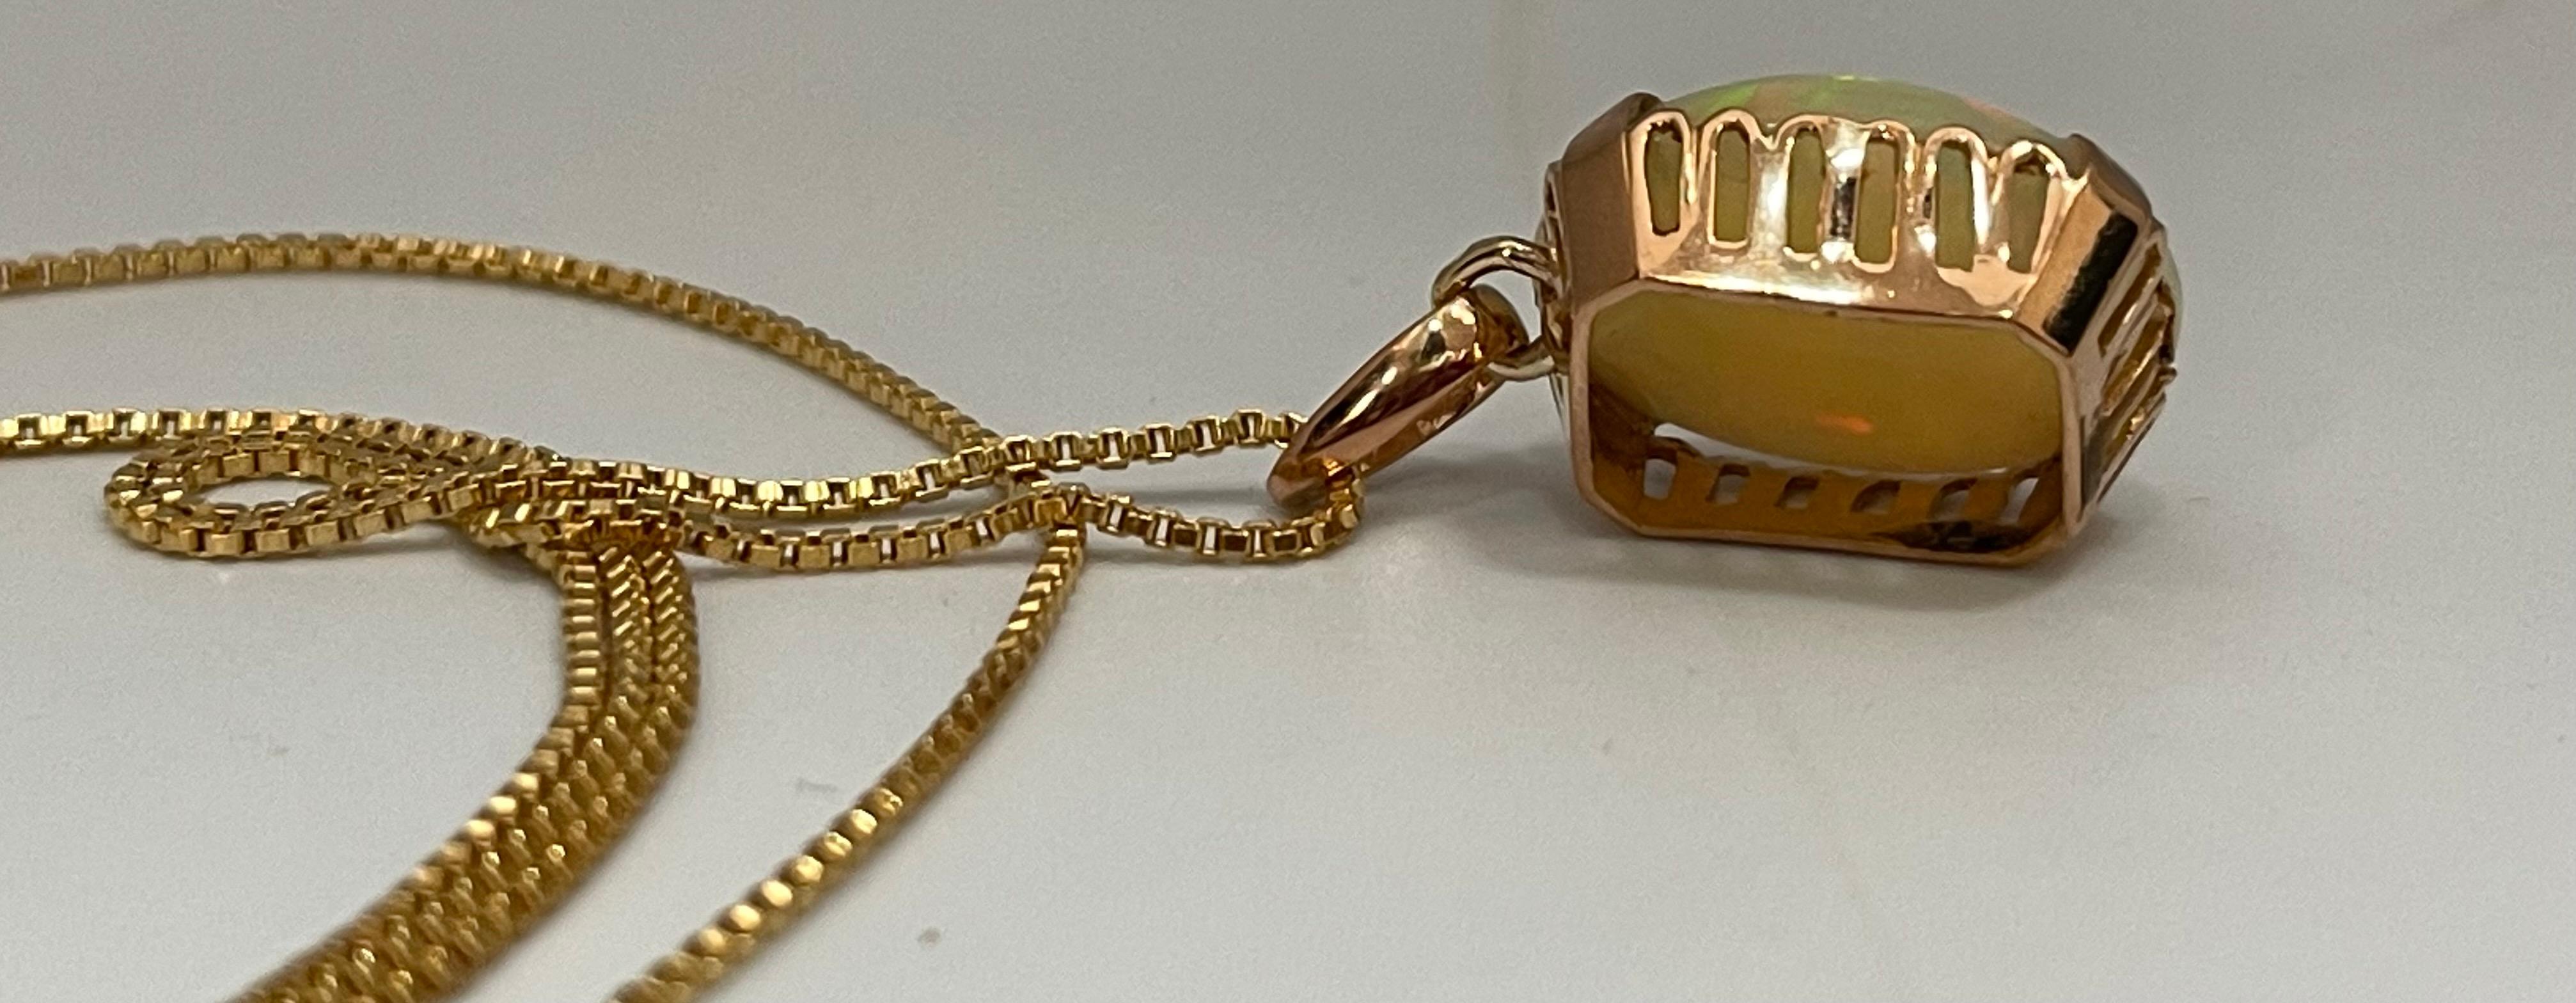 9 Carat Oval Ethiopian Opal Pendant / Necklace 18 Karat + 18 Kt Gold Chain 6